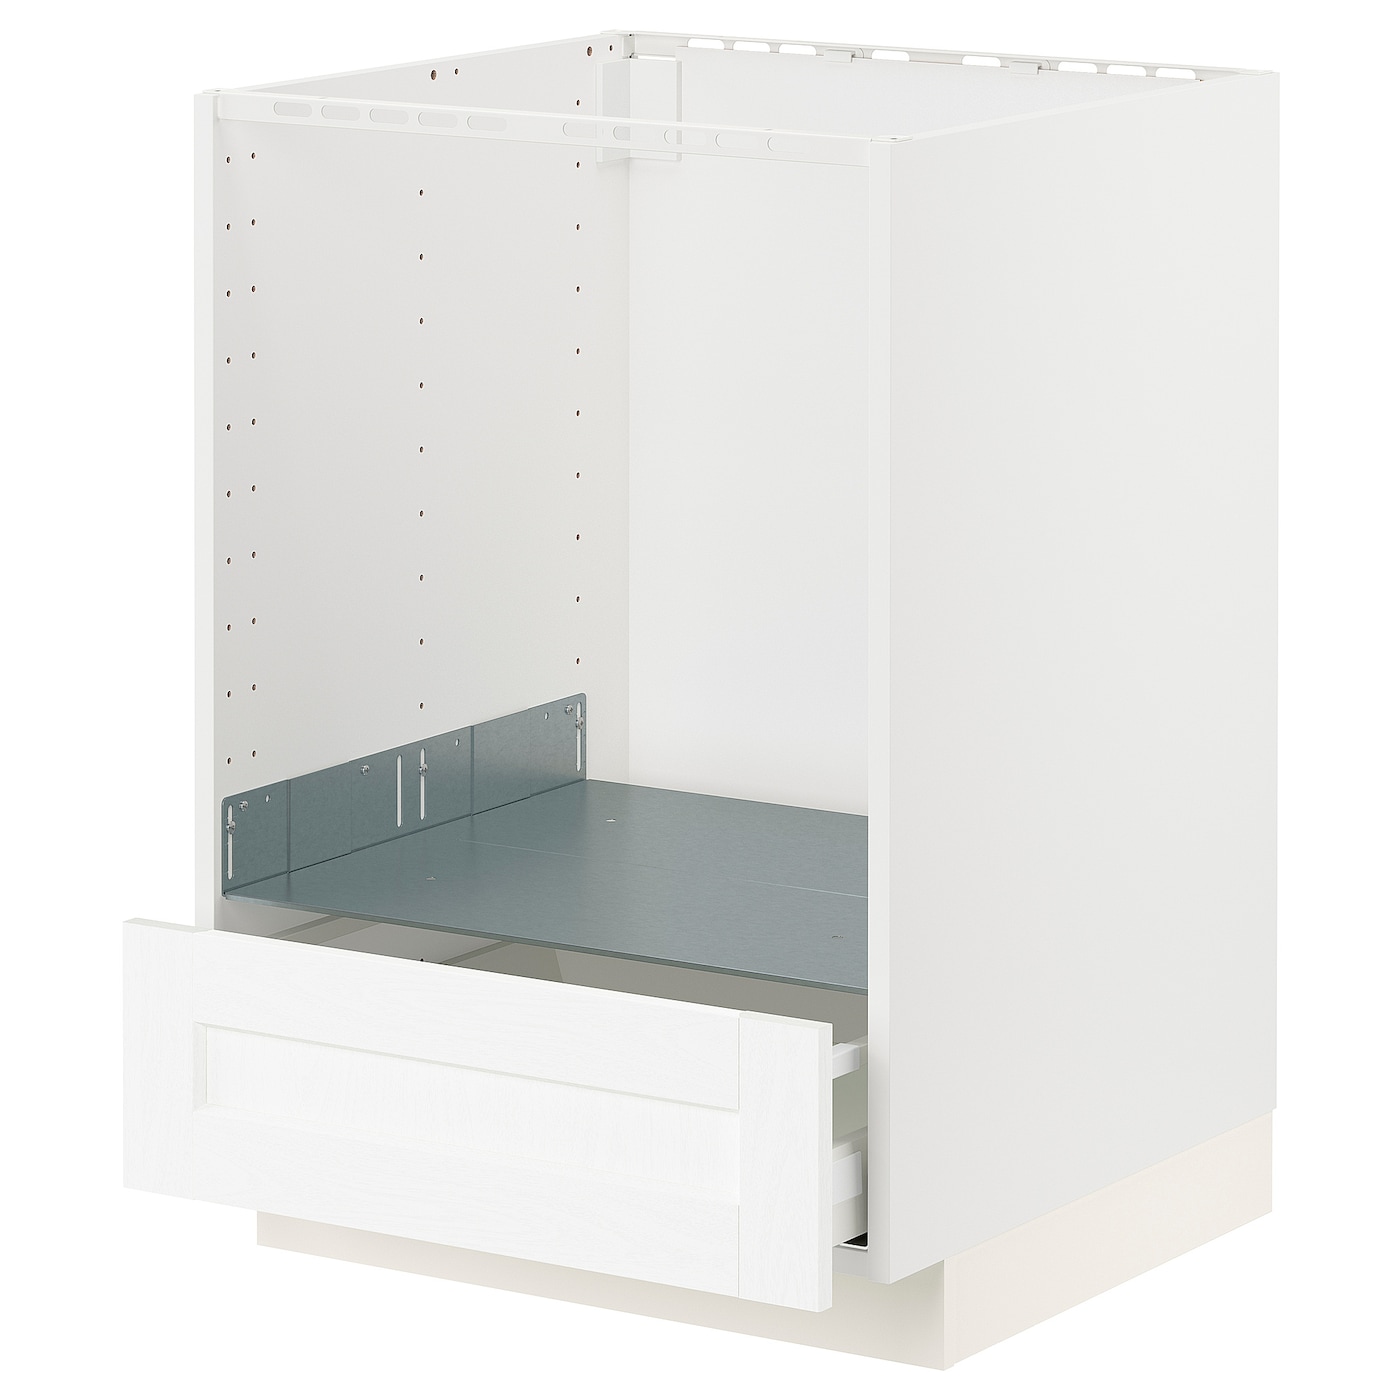 Шкаф для встроенной техники - IKEA METOD MAXIMERA, 88x62x60см, белый/серый, МЕТОД МАКСИМЕРА ИКЕА